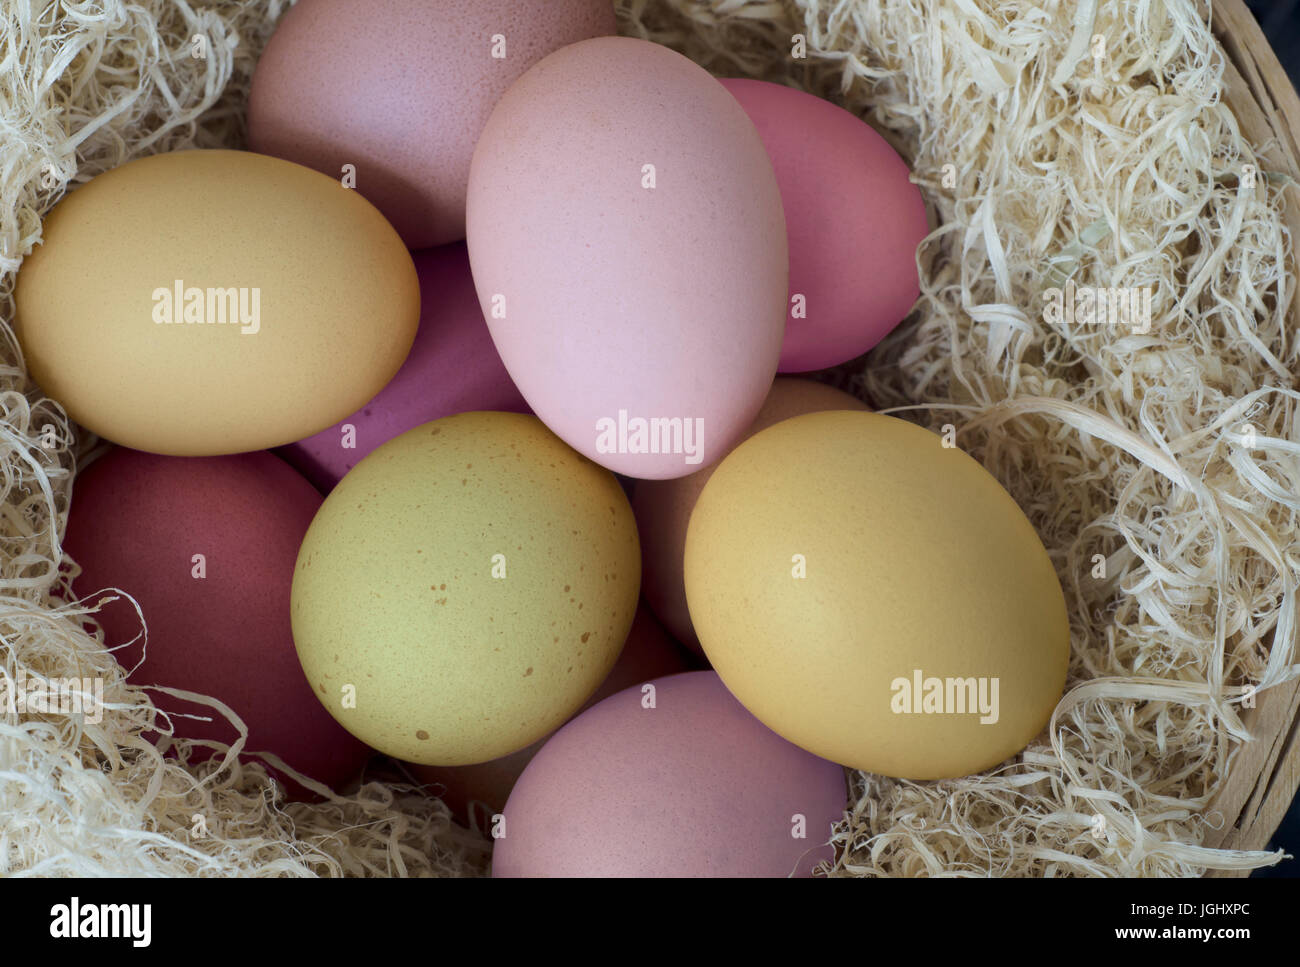 Bunt, natürlichen Eiern für Ostern in rosa, grün und gelb Tönen gemalt.  Verschachtelung in einem Korb aus verschlungenen getrocknete Gräser und von oben fotografiert. Stockfoto